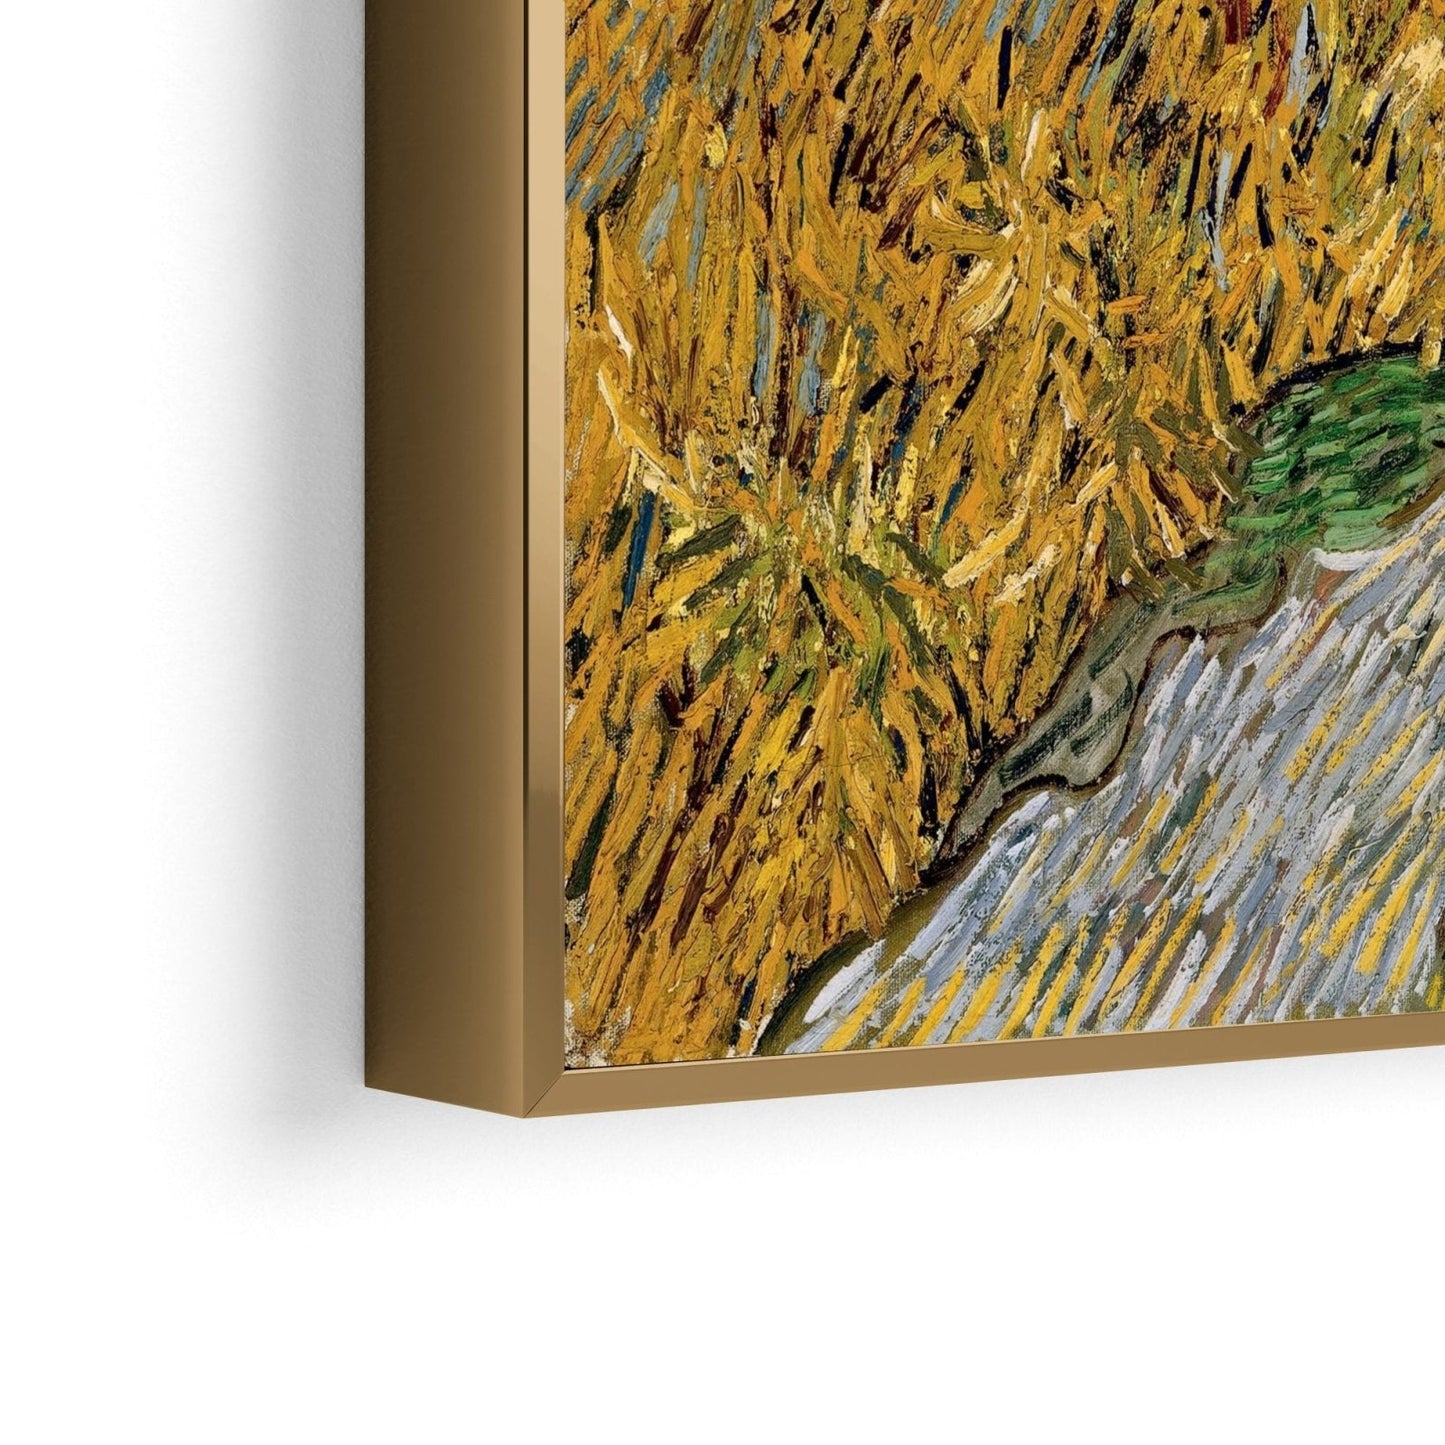 Straße mit Zypresse und Stern, Vincent Van Gogh